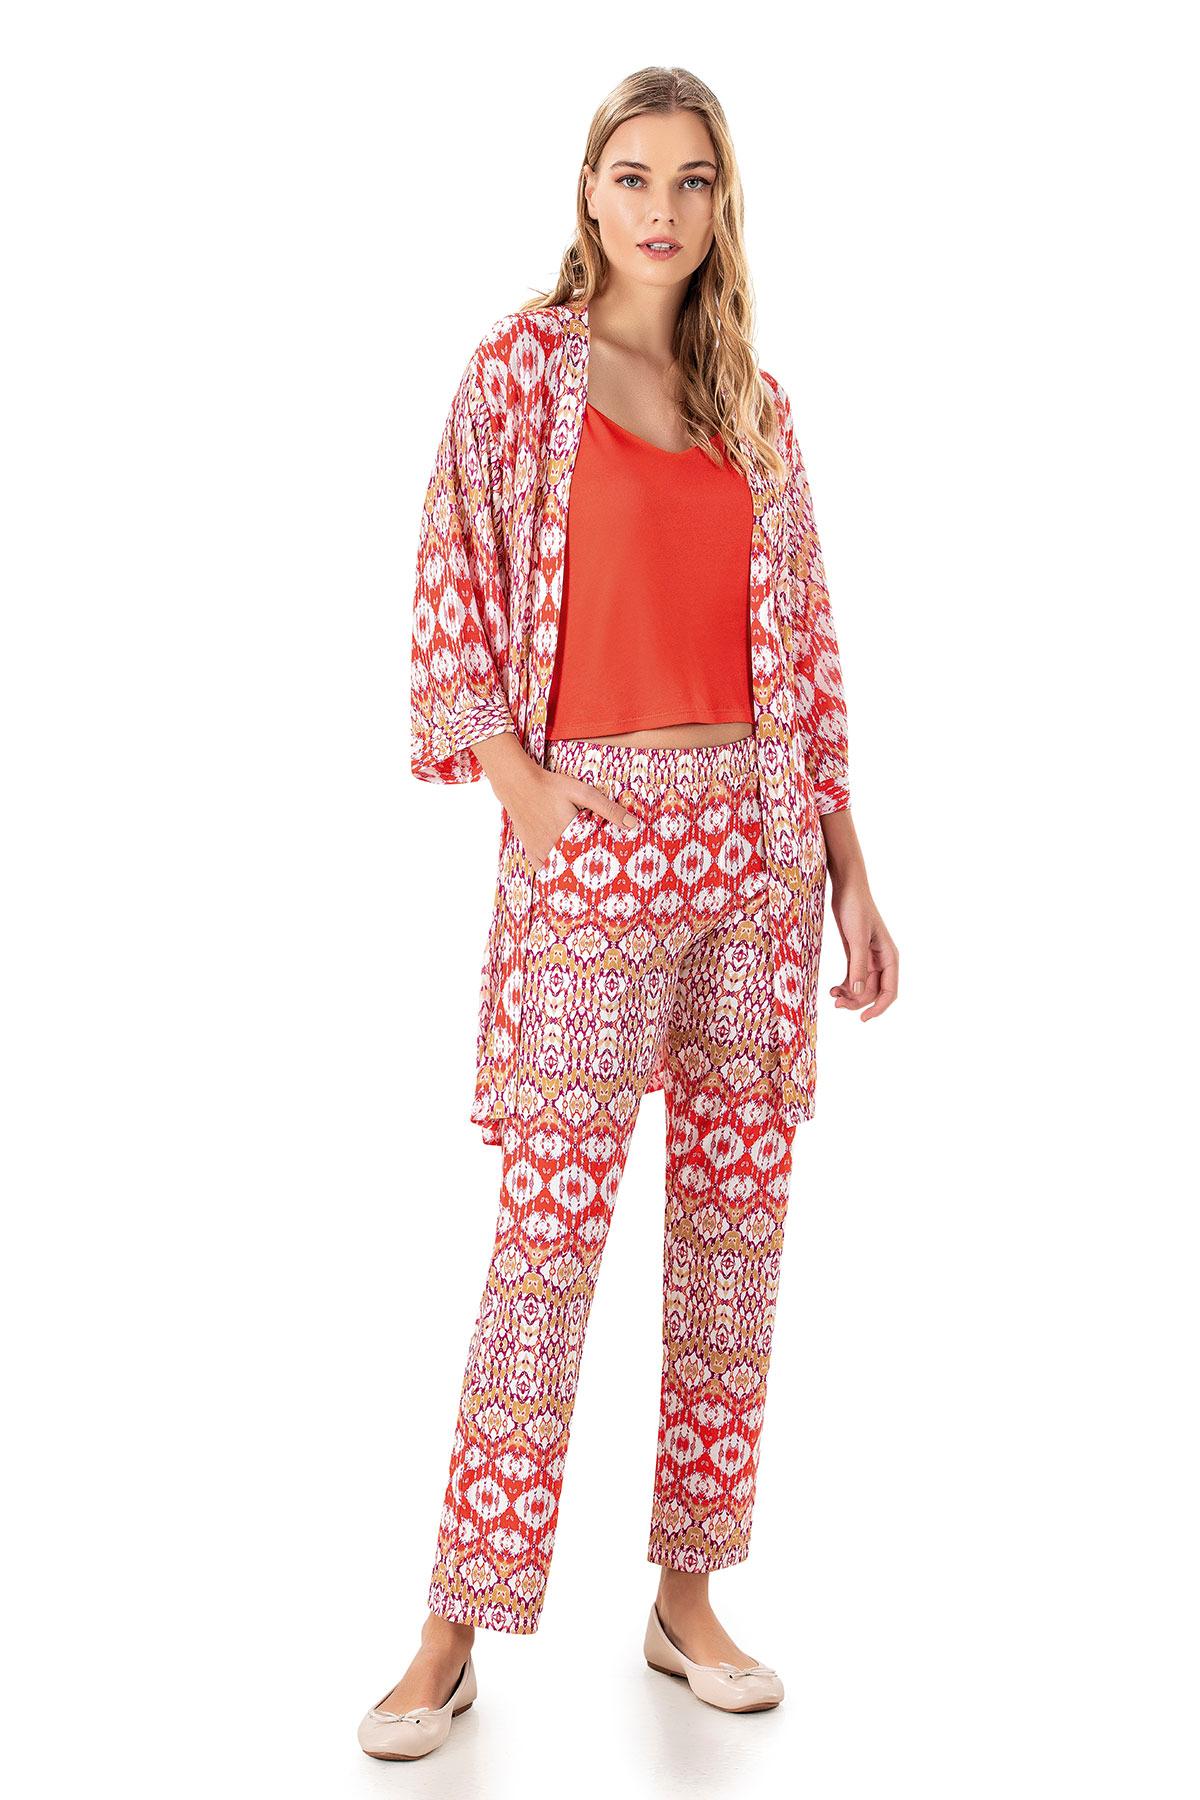 DOWRY Ženski set top, kimono i pantalone 1513 narandžasti